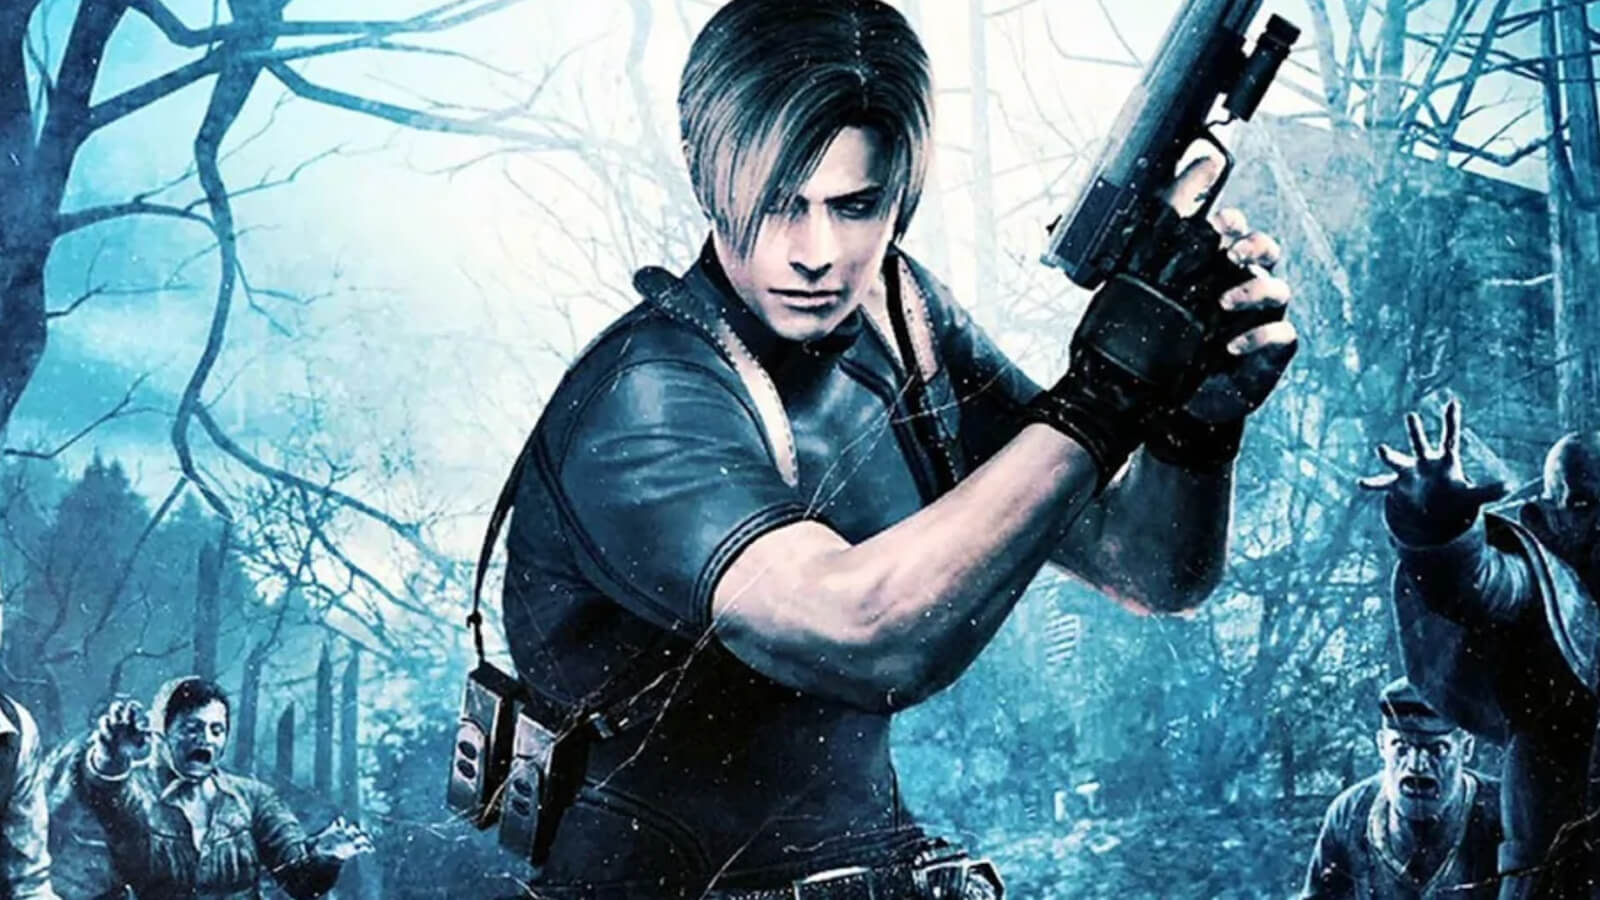 Resident Evil 4 VR: Дата Выхода, Трейлеры, Подробности Игрового Ироцесса и многое другое